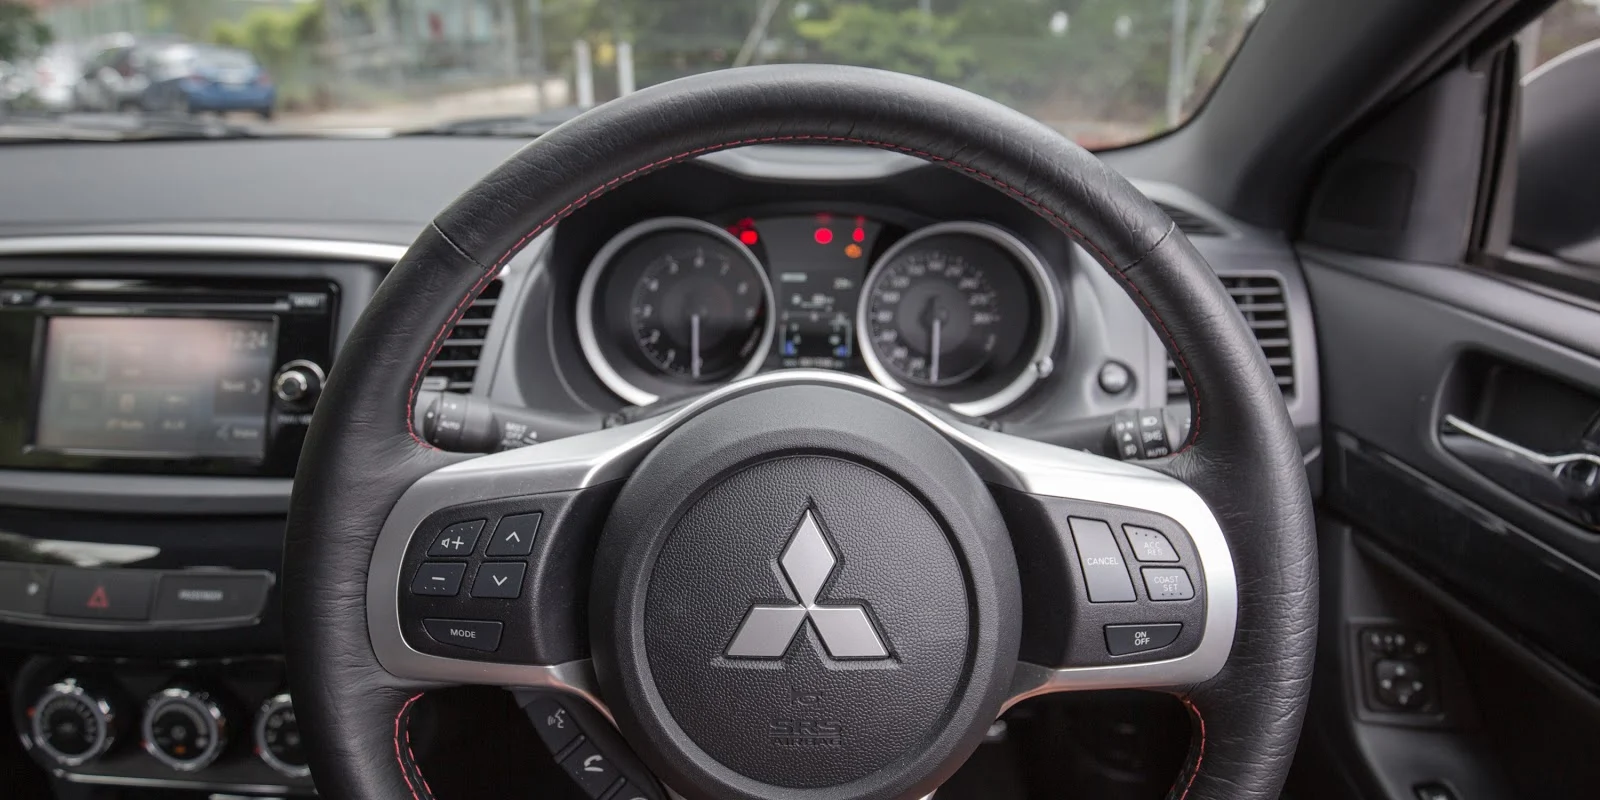 Đánh giá xe Mitsubishi Lancer 2016